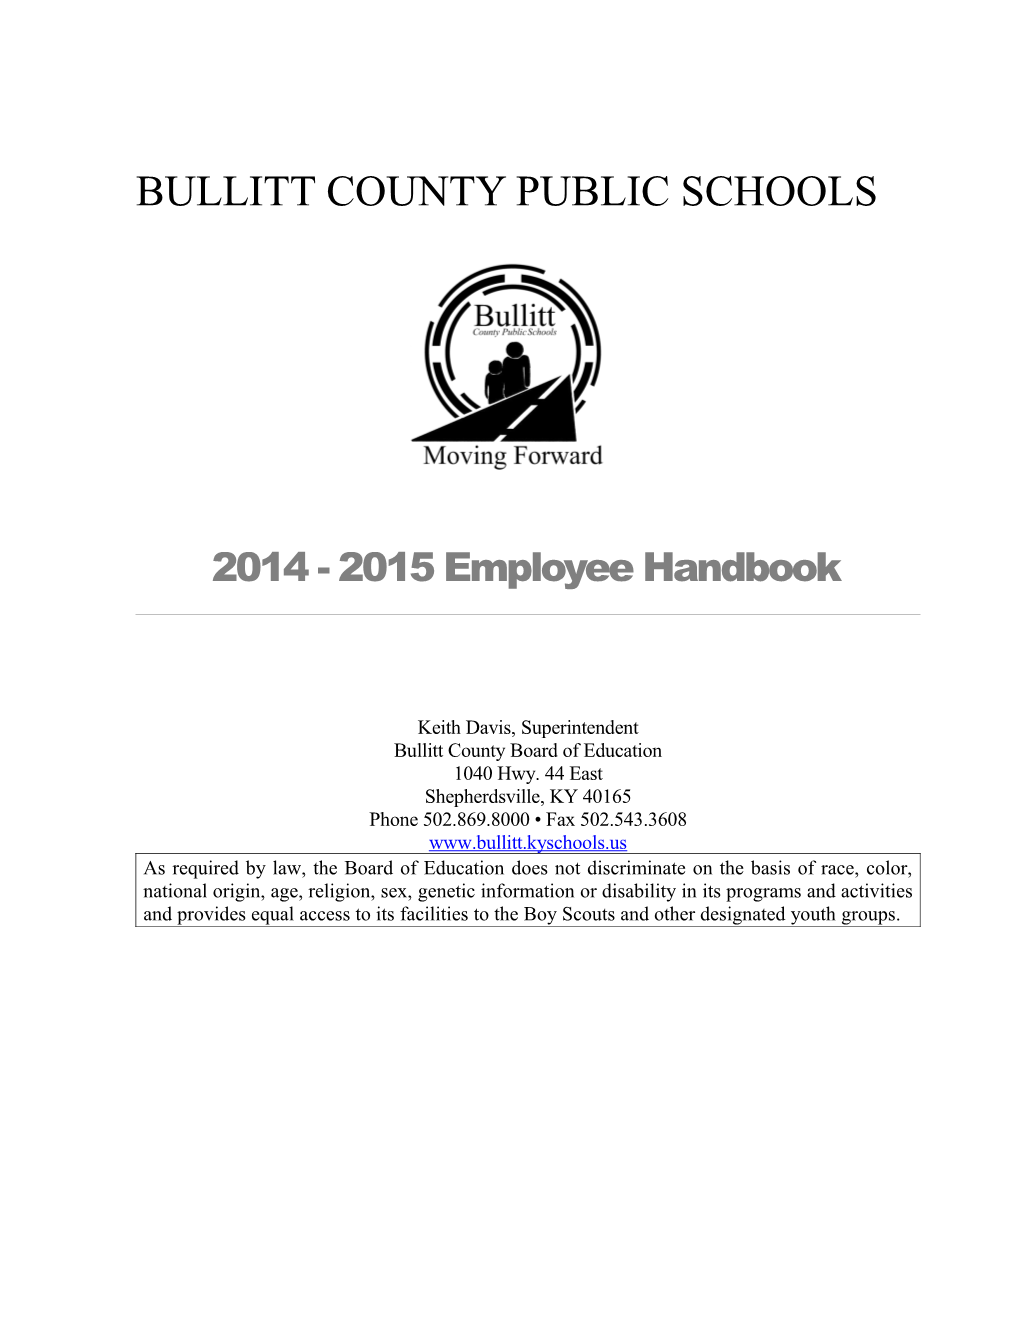 Bullitt Countypublic Schools